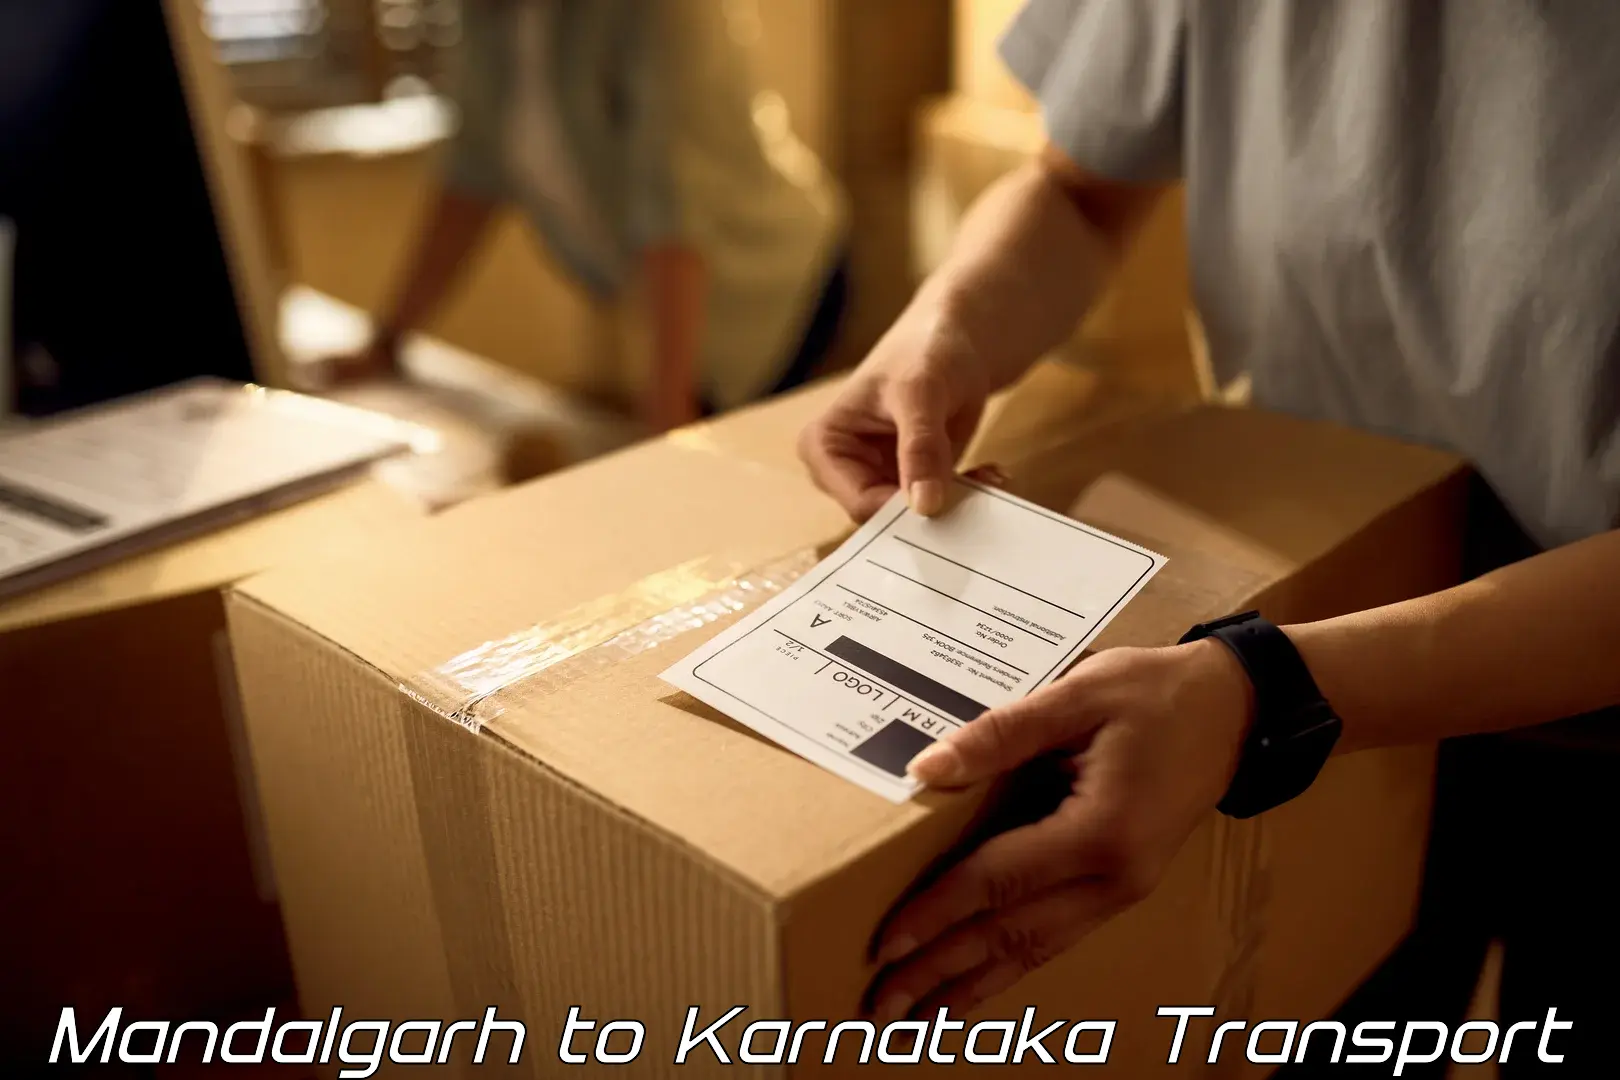 Transport in sharing Mandalgarh to Bangarapet